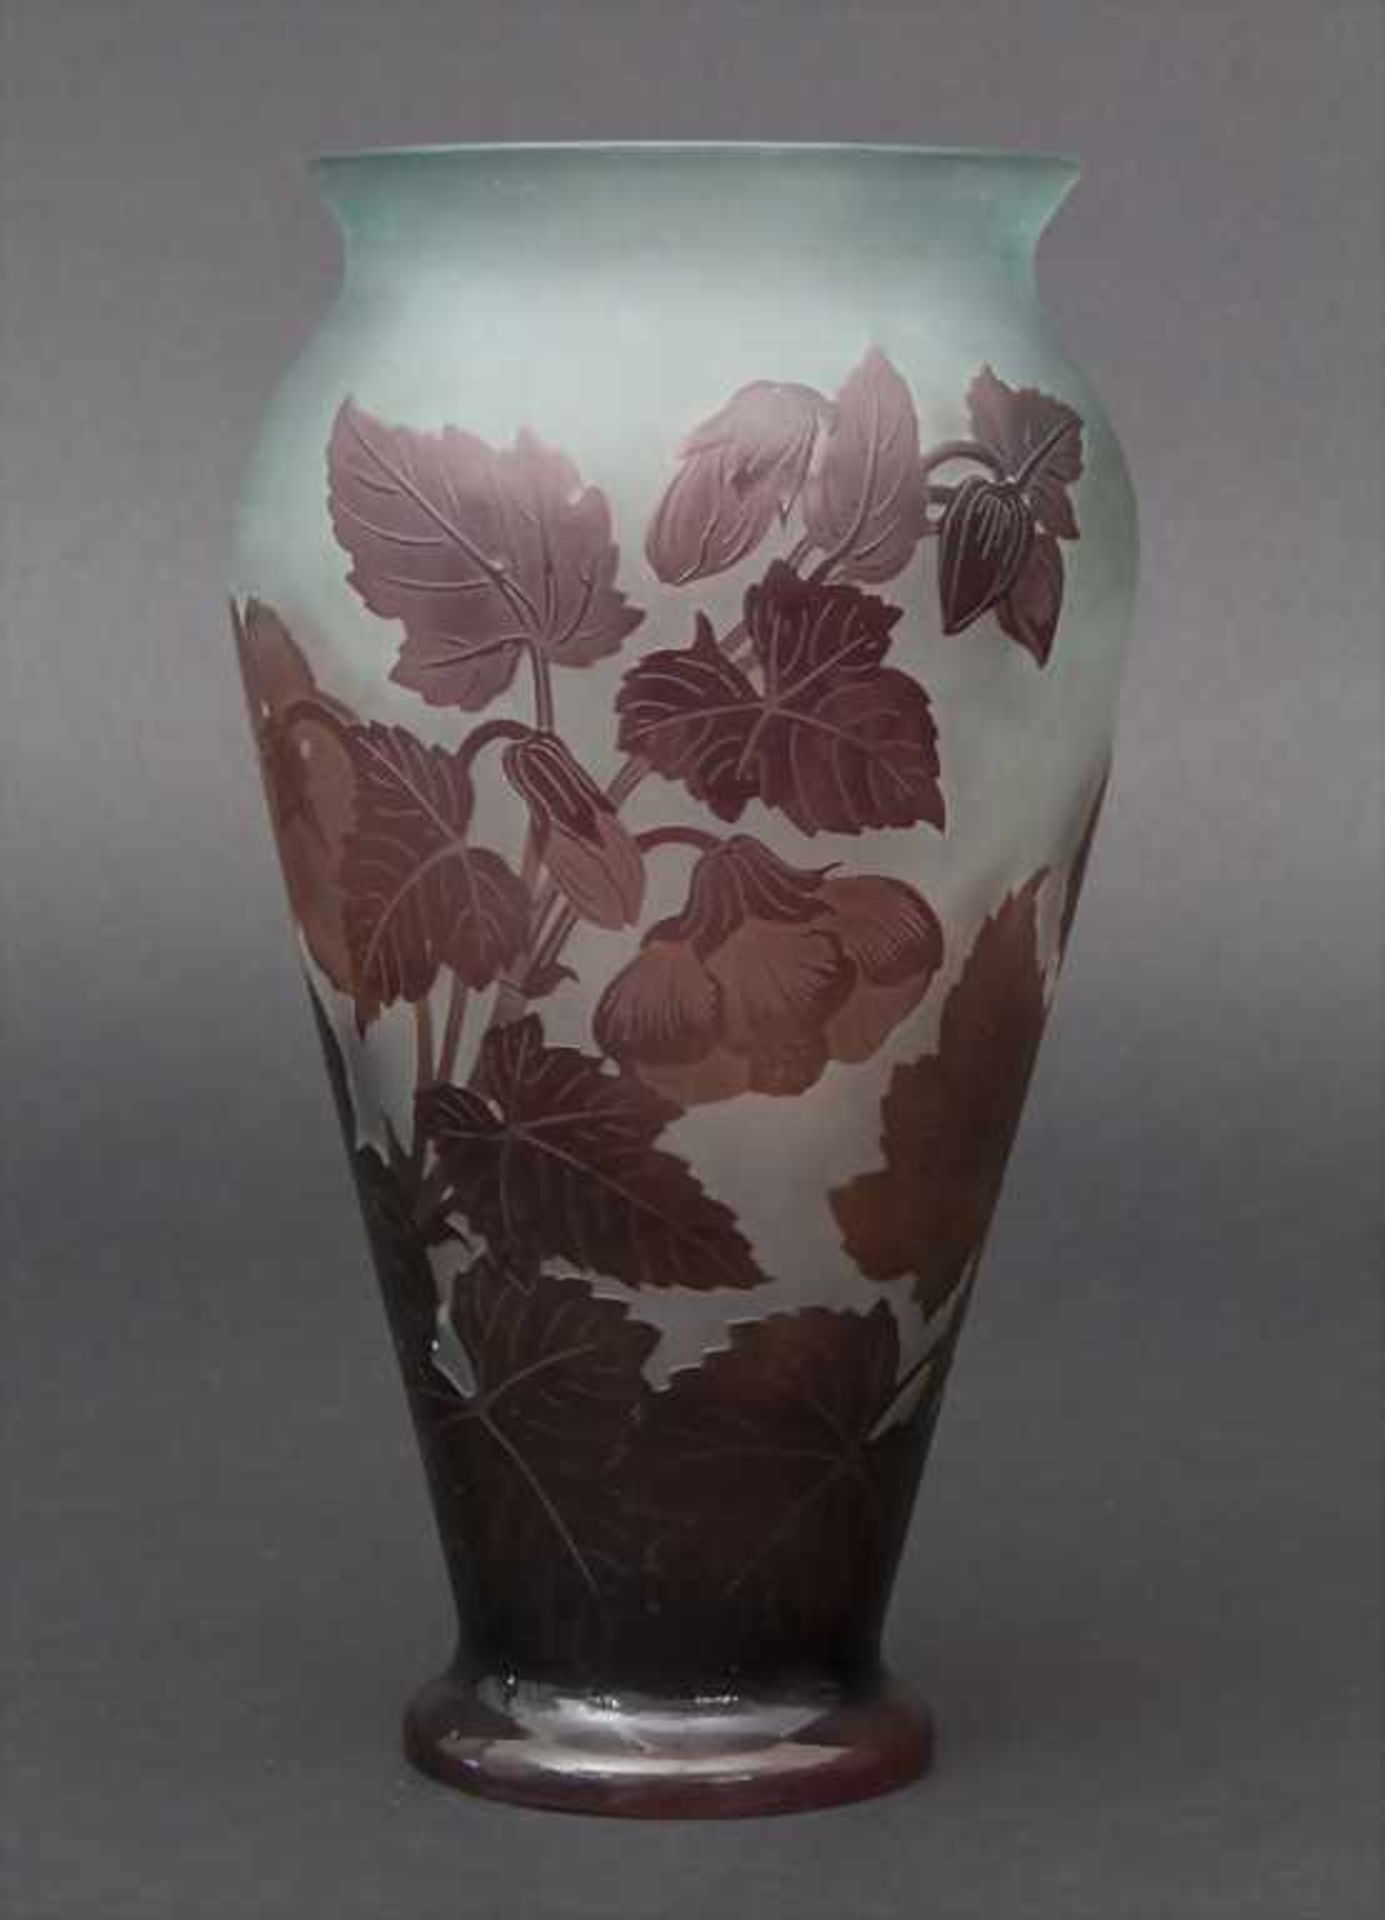 Jugendstil Vase mit Malve (Mauve) / An Art Nouveau vase with mallow, Emile Gallé, Ecole de Nancy, um